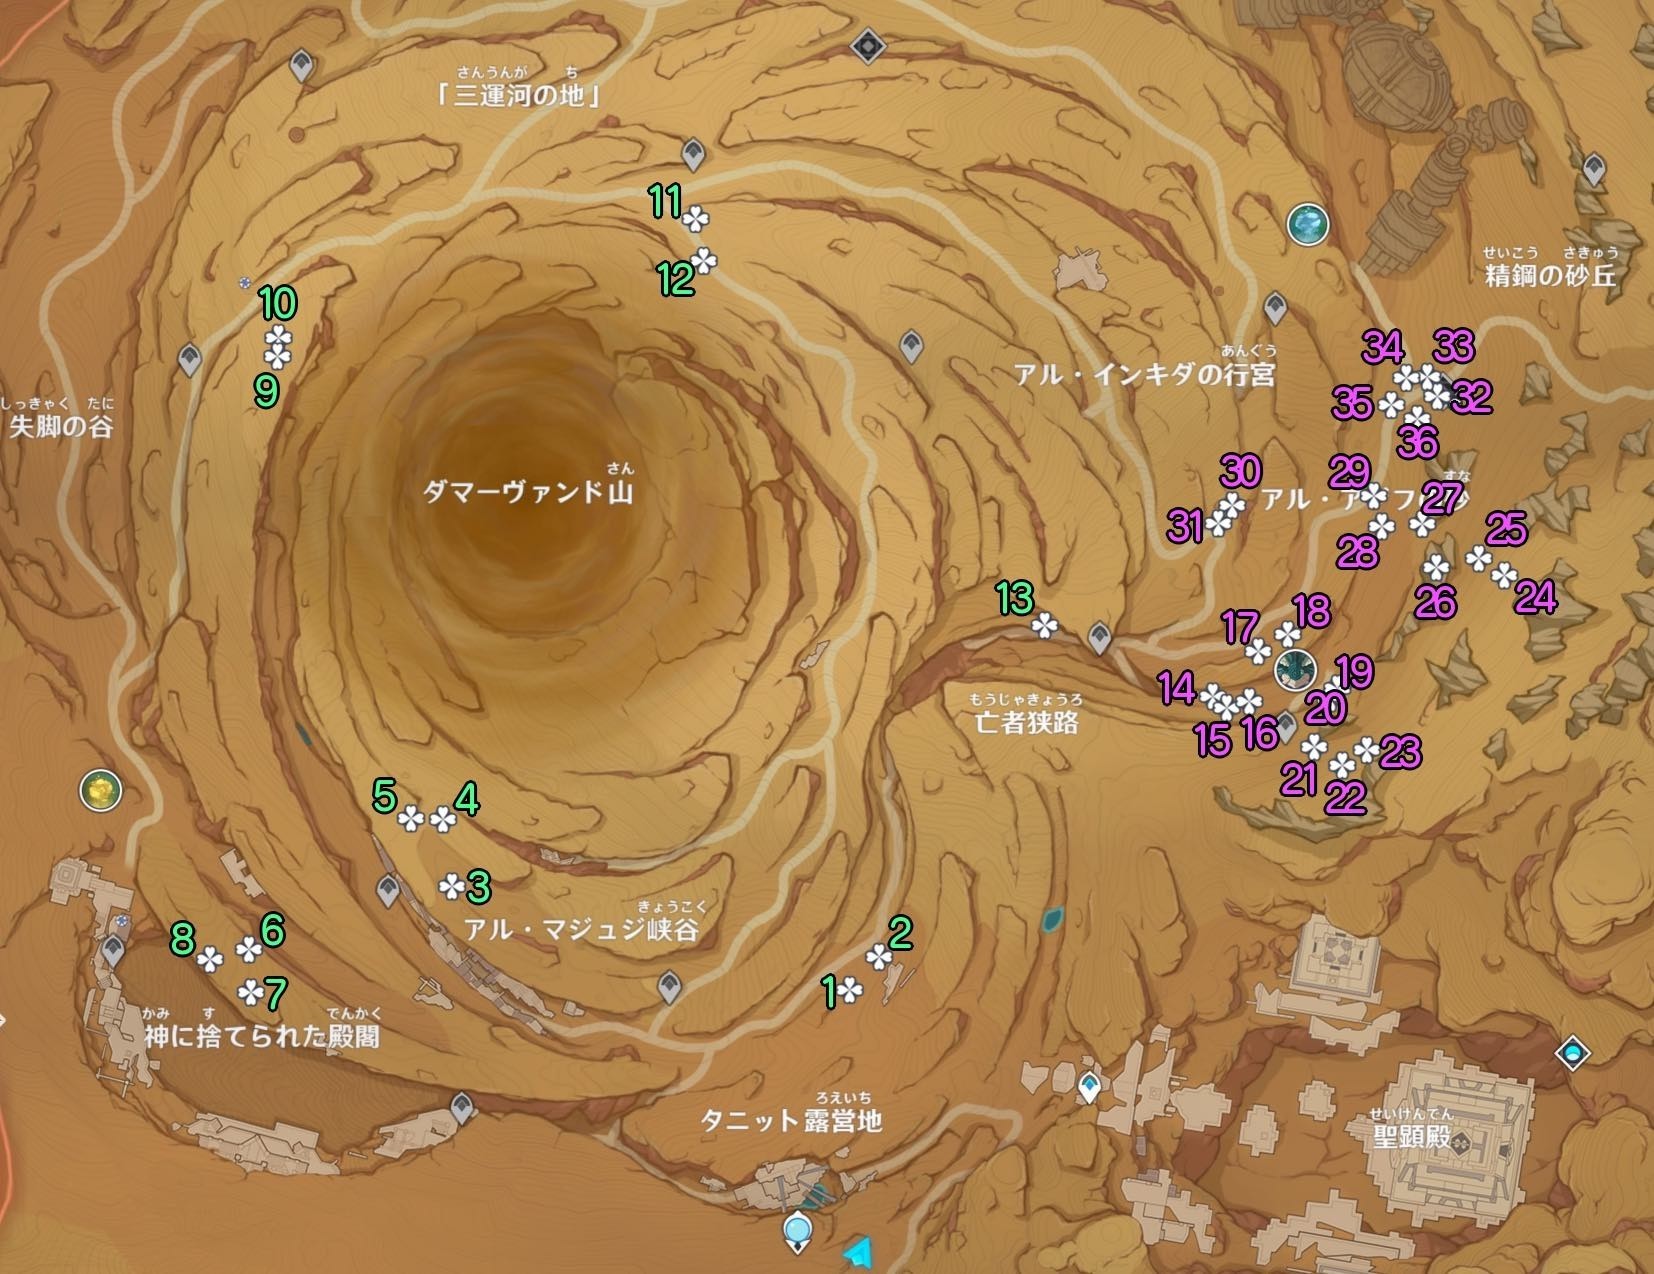 《原神》3.4沙脂蛹收集地圖點位及分佈 沙脂蛹怎麼獲得_地上區域 - 第2張